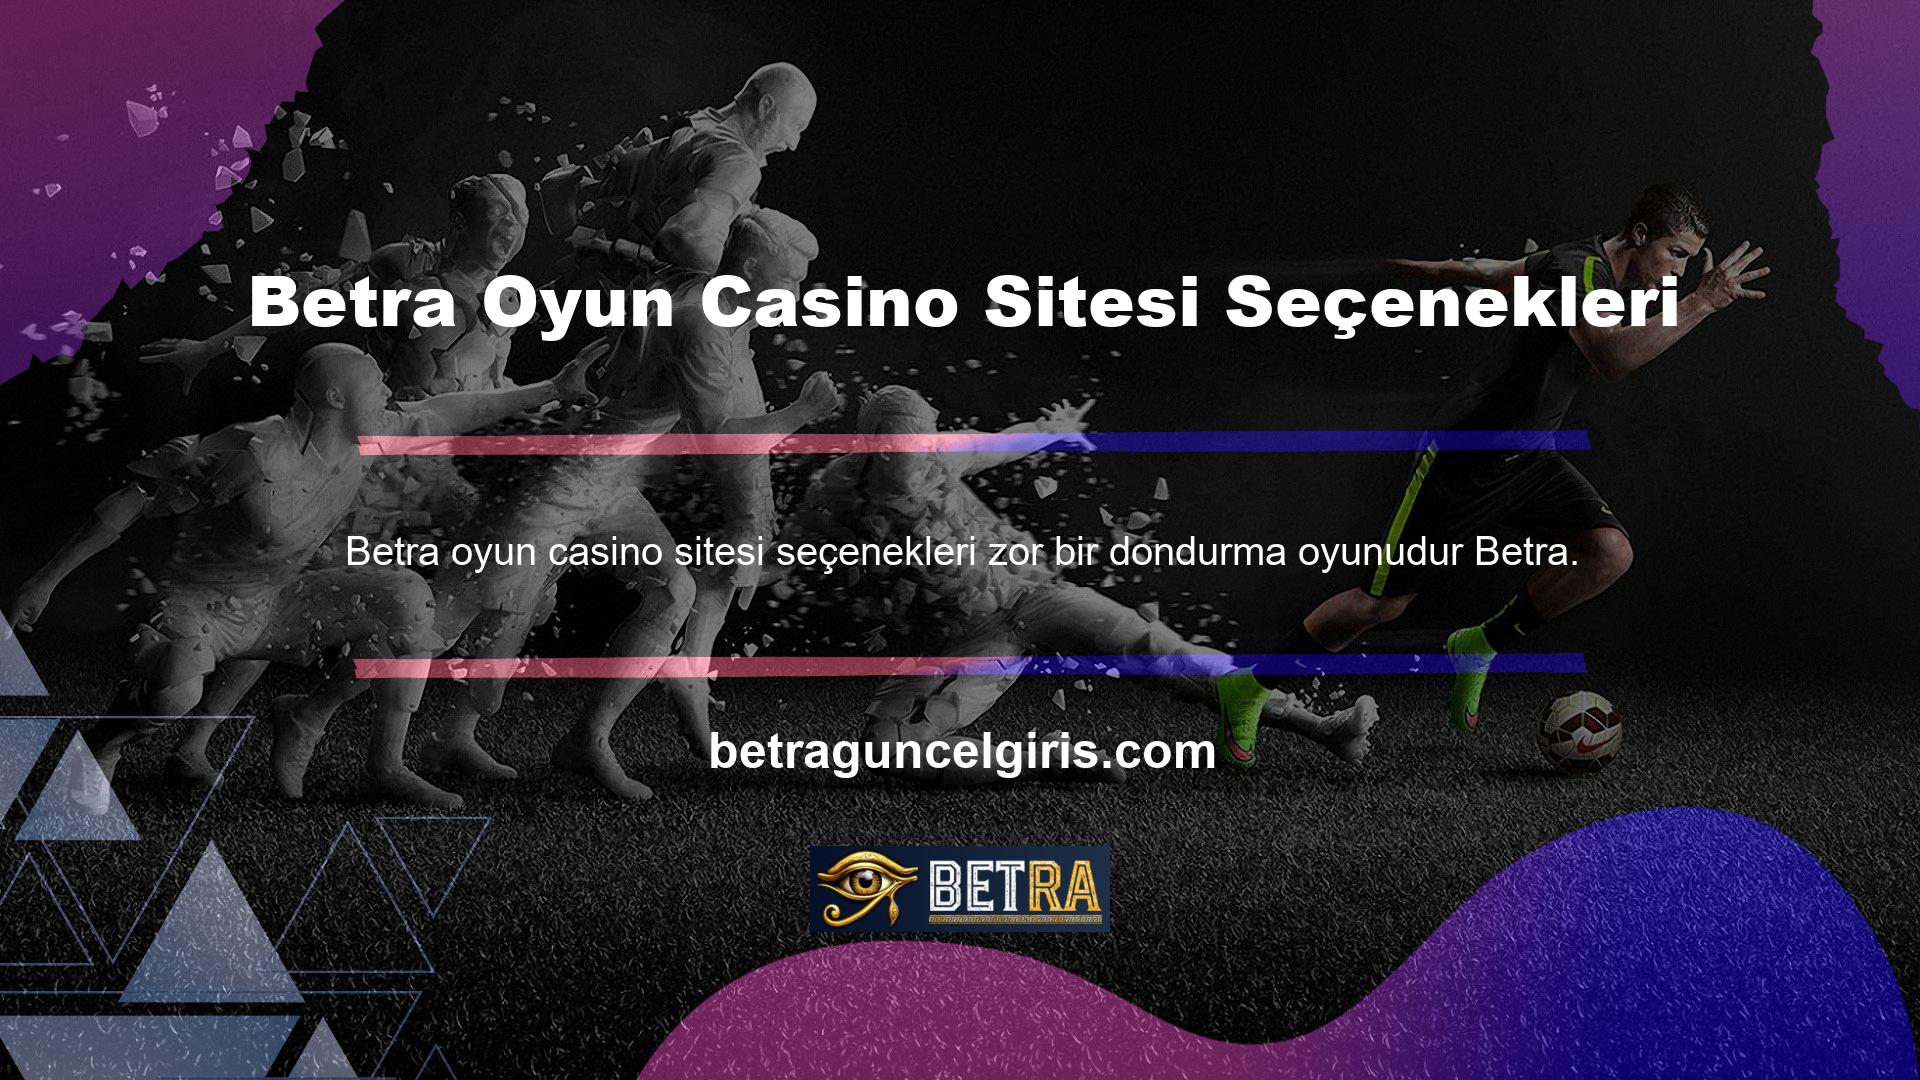 Ancak Betra oyun casino sitelerinin kullanılabilirliğinin sorunlu olabileceği durumlar vardır